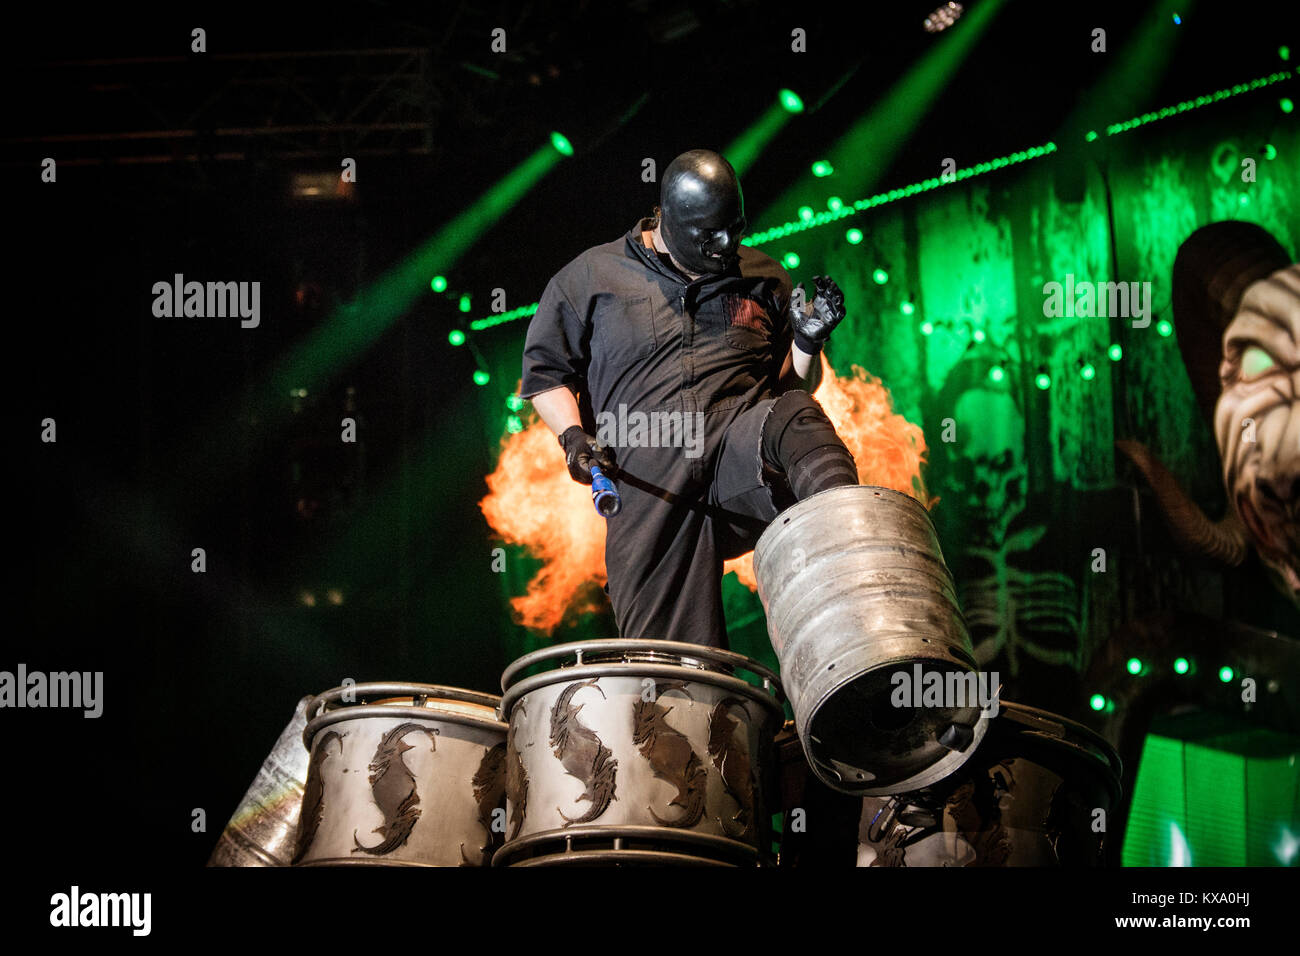 Le groupe de heavy metal américain Slipknot effectue un concert live au  festival de heavy metal danois Copenhell 2015 à Copenhague. Ici Shawn  Crahan musicien à la batterie/percussion est photographié et masqués